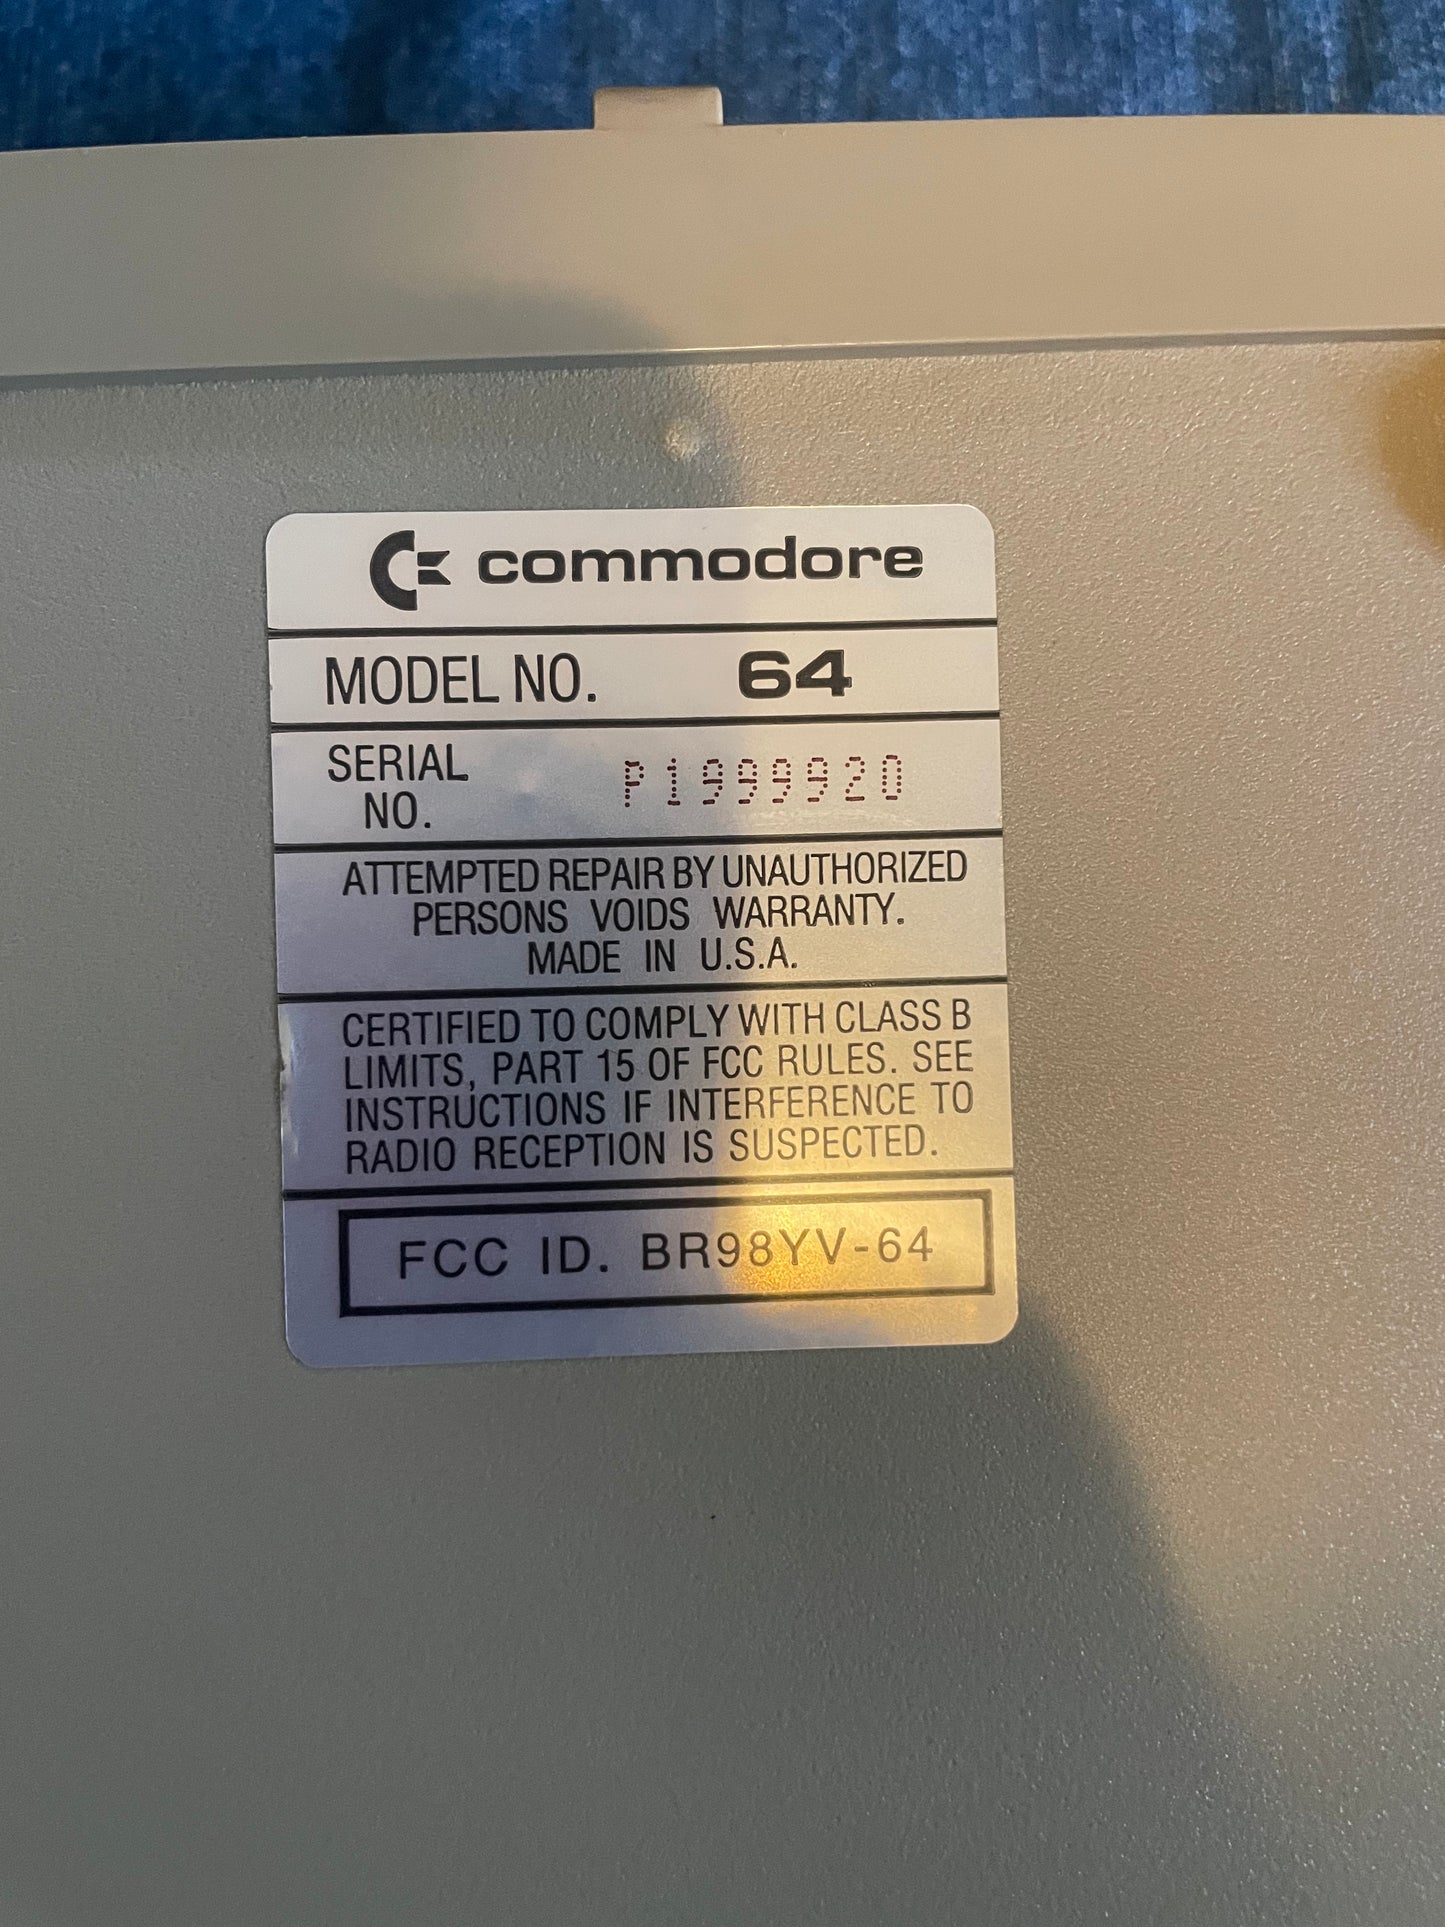 COMMODORE 64 COMPUTER (COMMODORE 64)